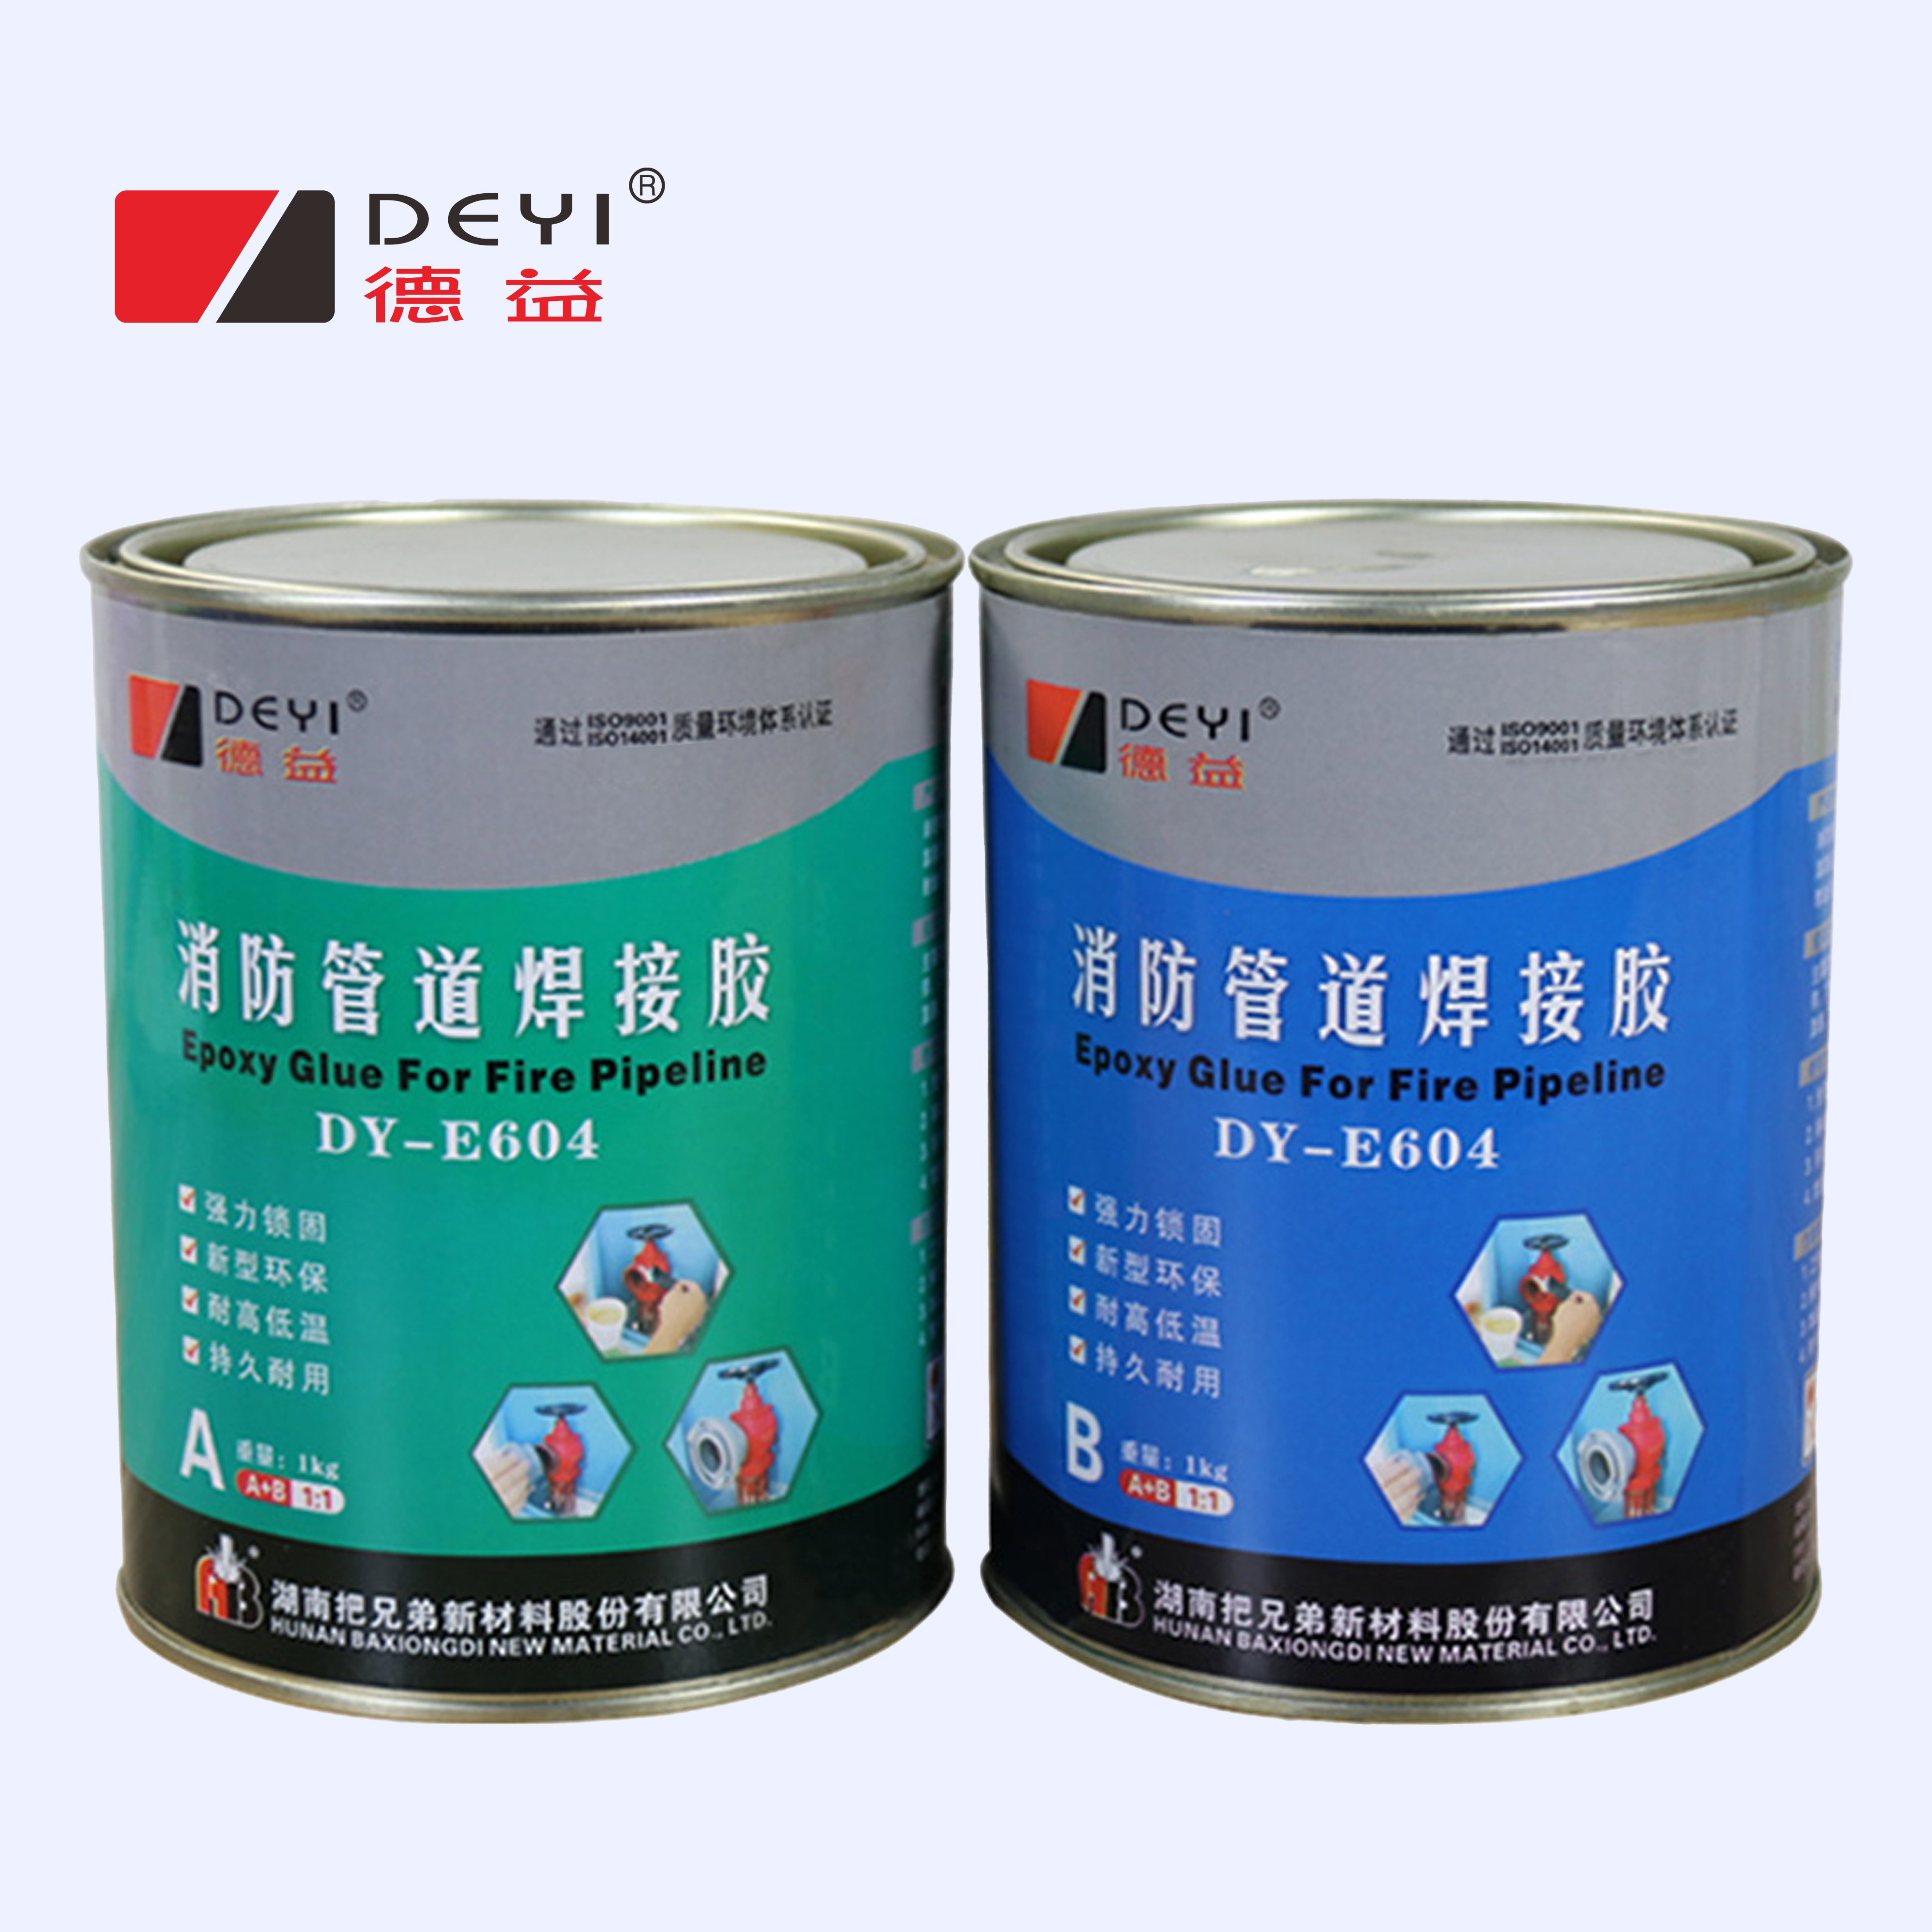 DY-E604消防管道焊接膠